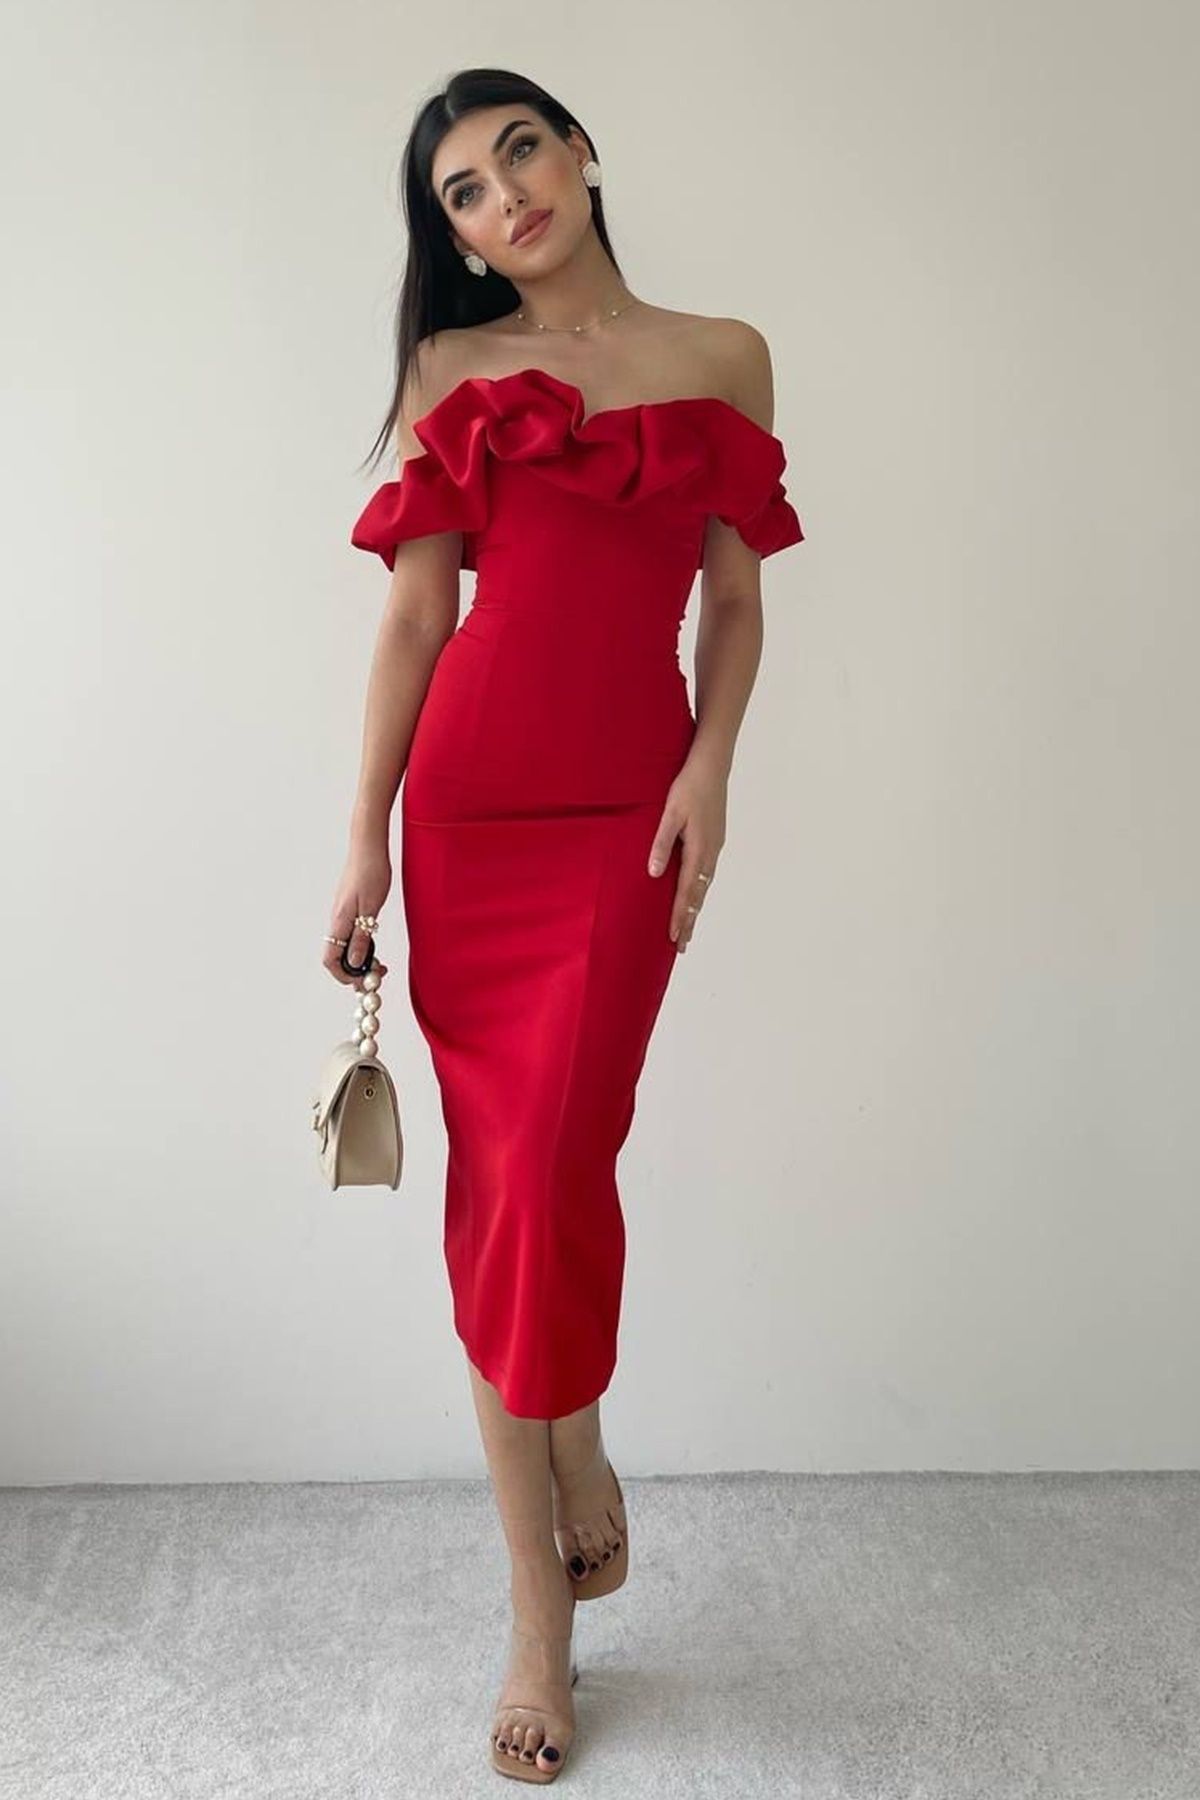 lovebox Kadın Straplez Yaka Düşük Omuz ve Yırtmaç Tasarımlı Midi Kalem Kırmızı Abiye Elbise 219